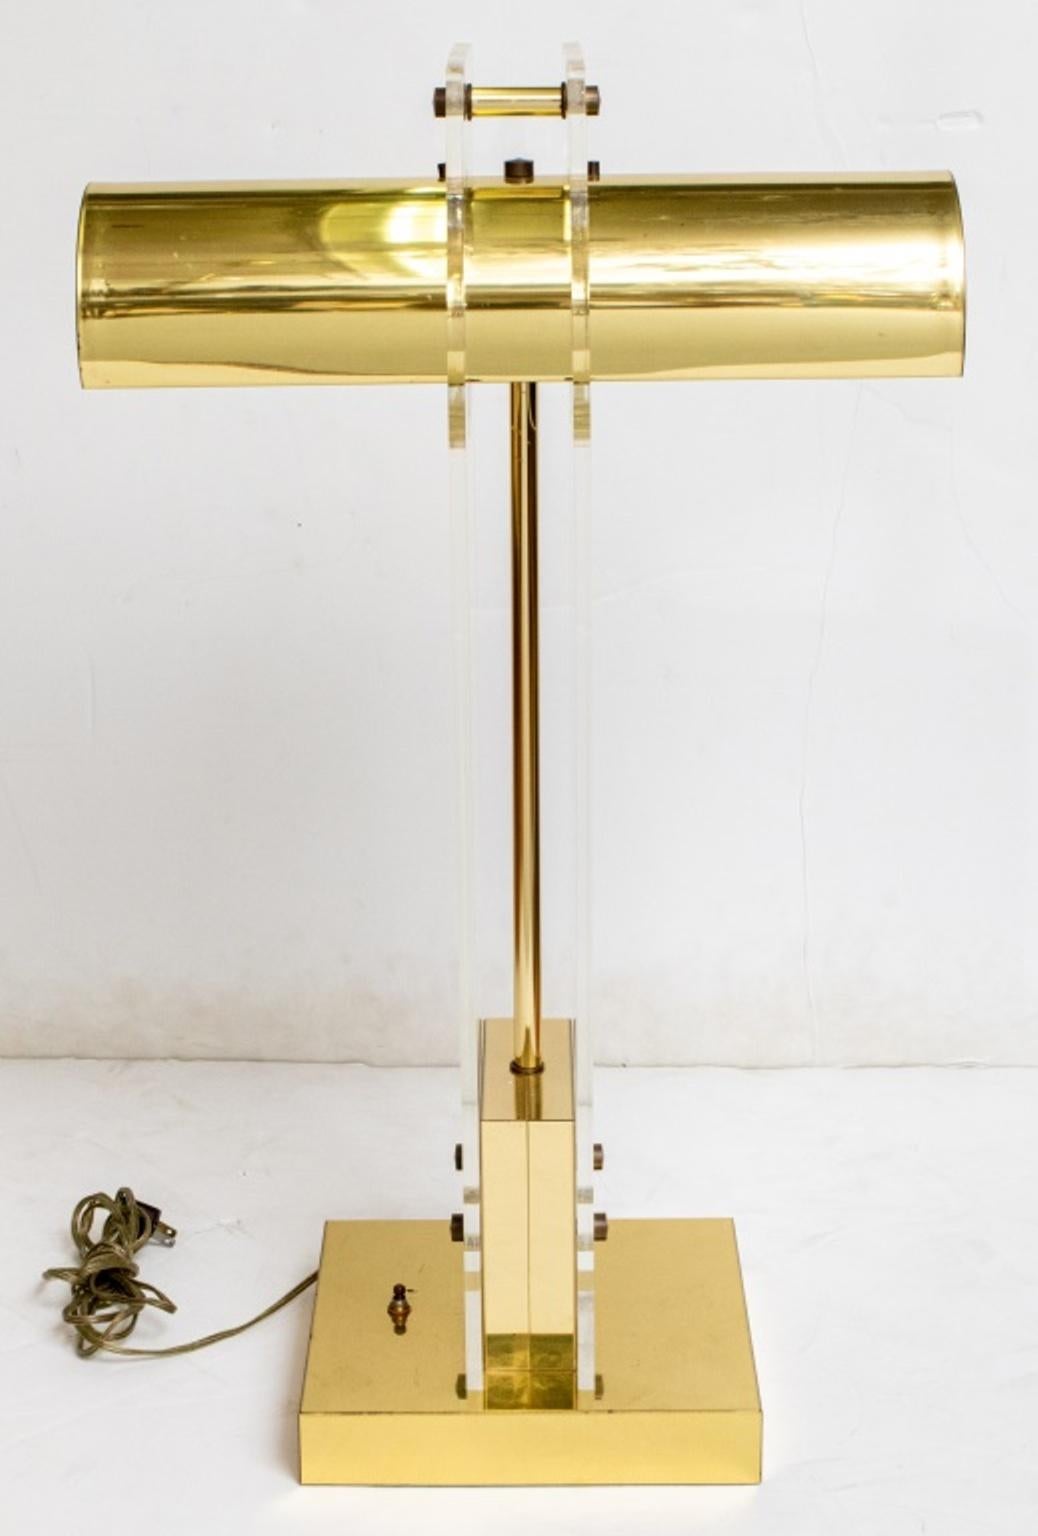 Lampe de bureau ou de table en métal doré et lucite, de style moderne du milieu du siècle, avec deux douilles pour ampoules.

Dimensions : 30,5